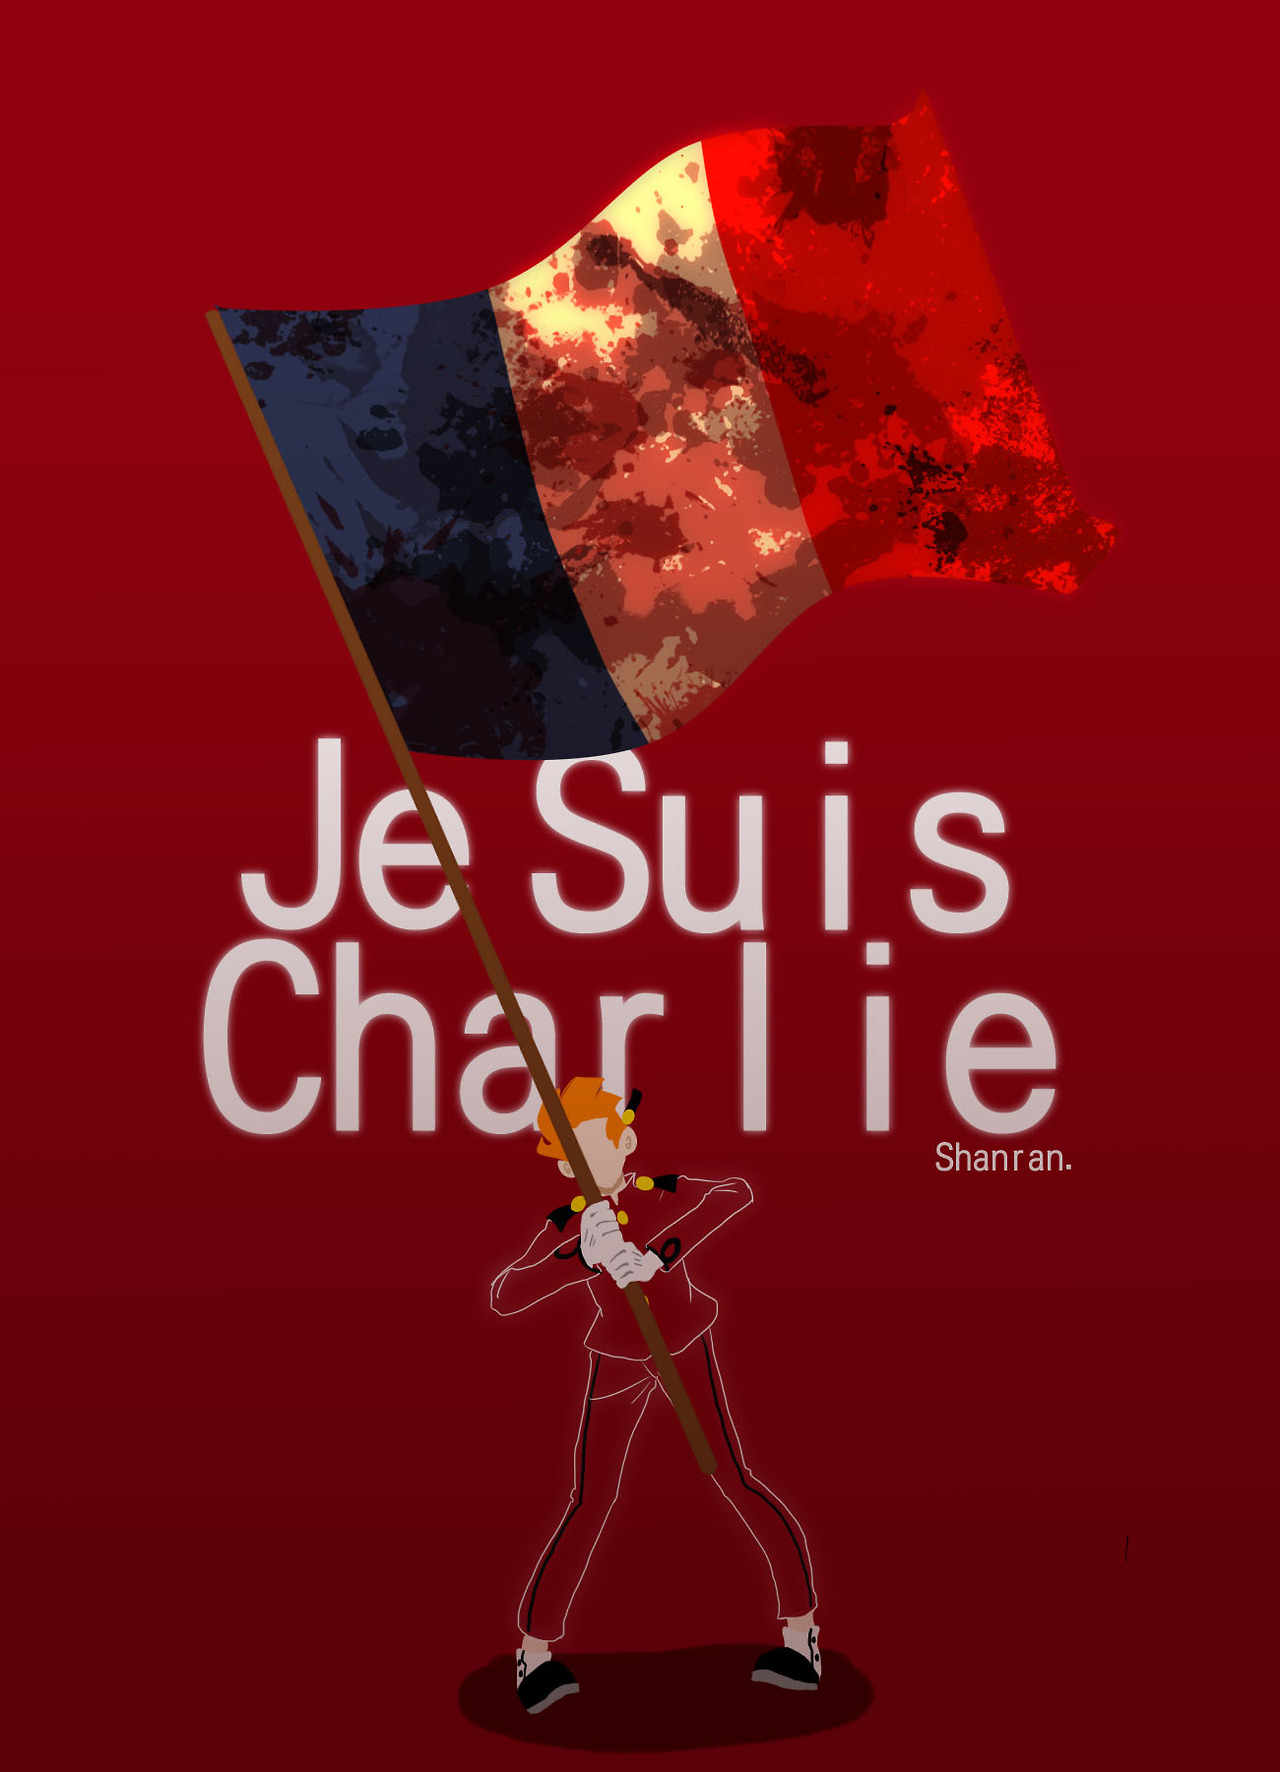 Fanart Friday: Je suis Charlie